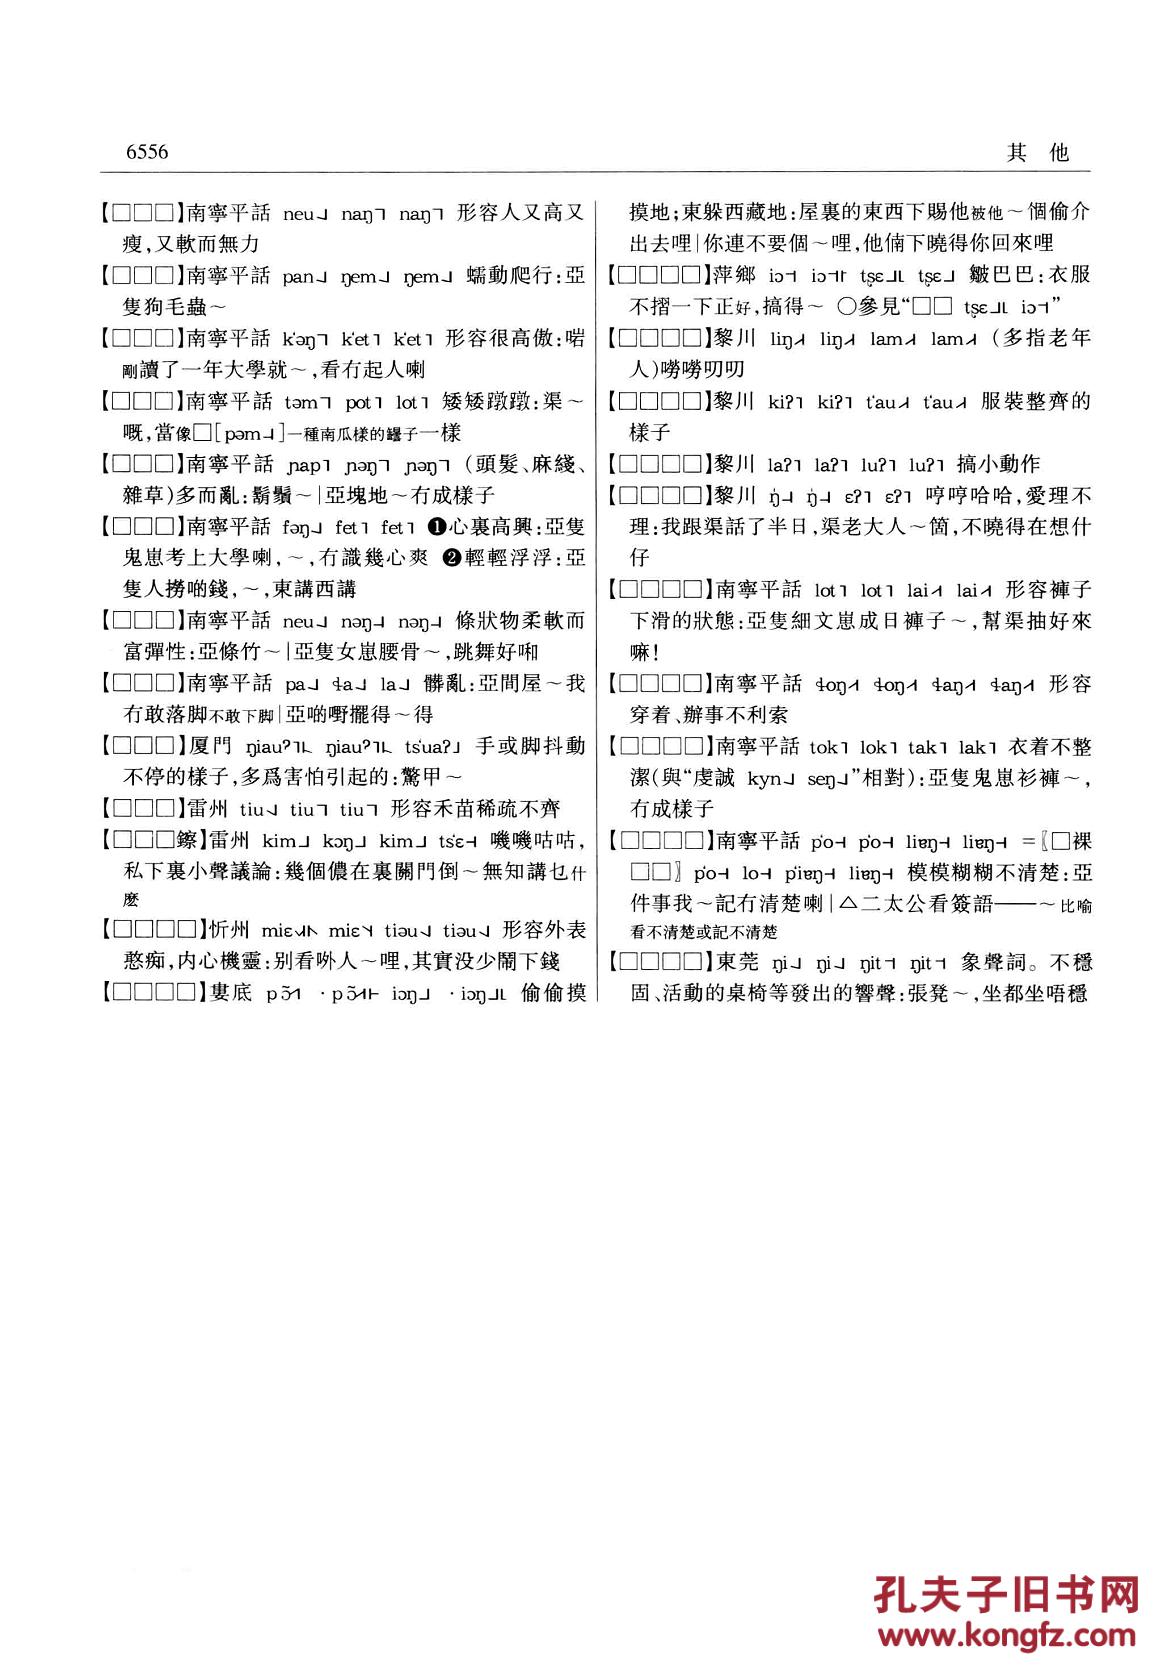 【图】现代汉语方言大词典(全6卷)PDF版_江苏